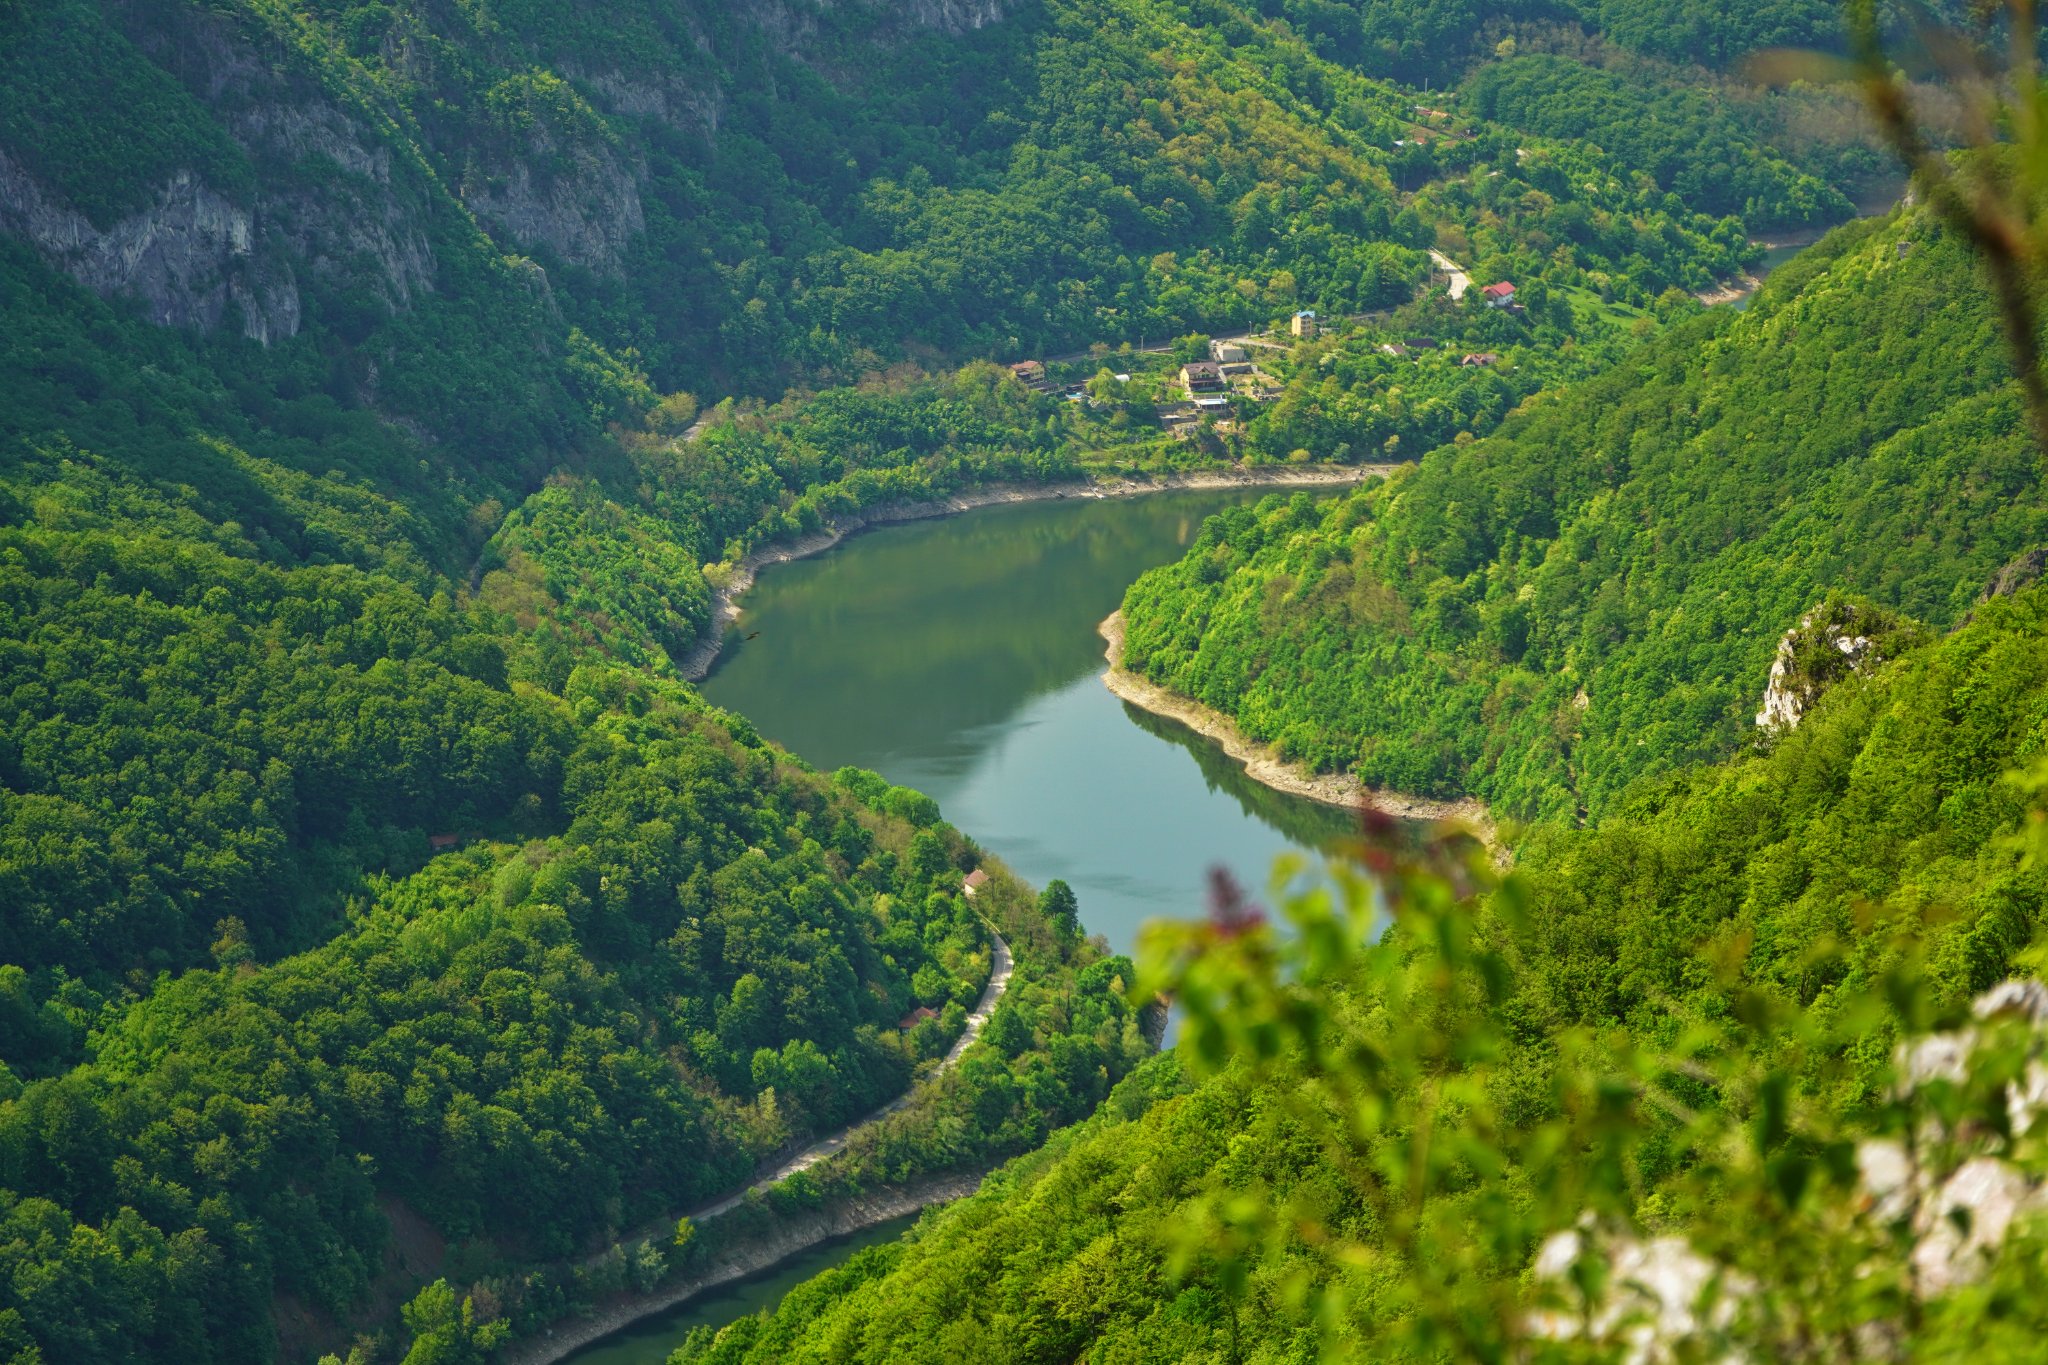  În urcare spre Poiana Cicilovete, vedere spre Lacul Prisaca - Adrian Vintilă